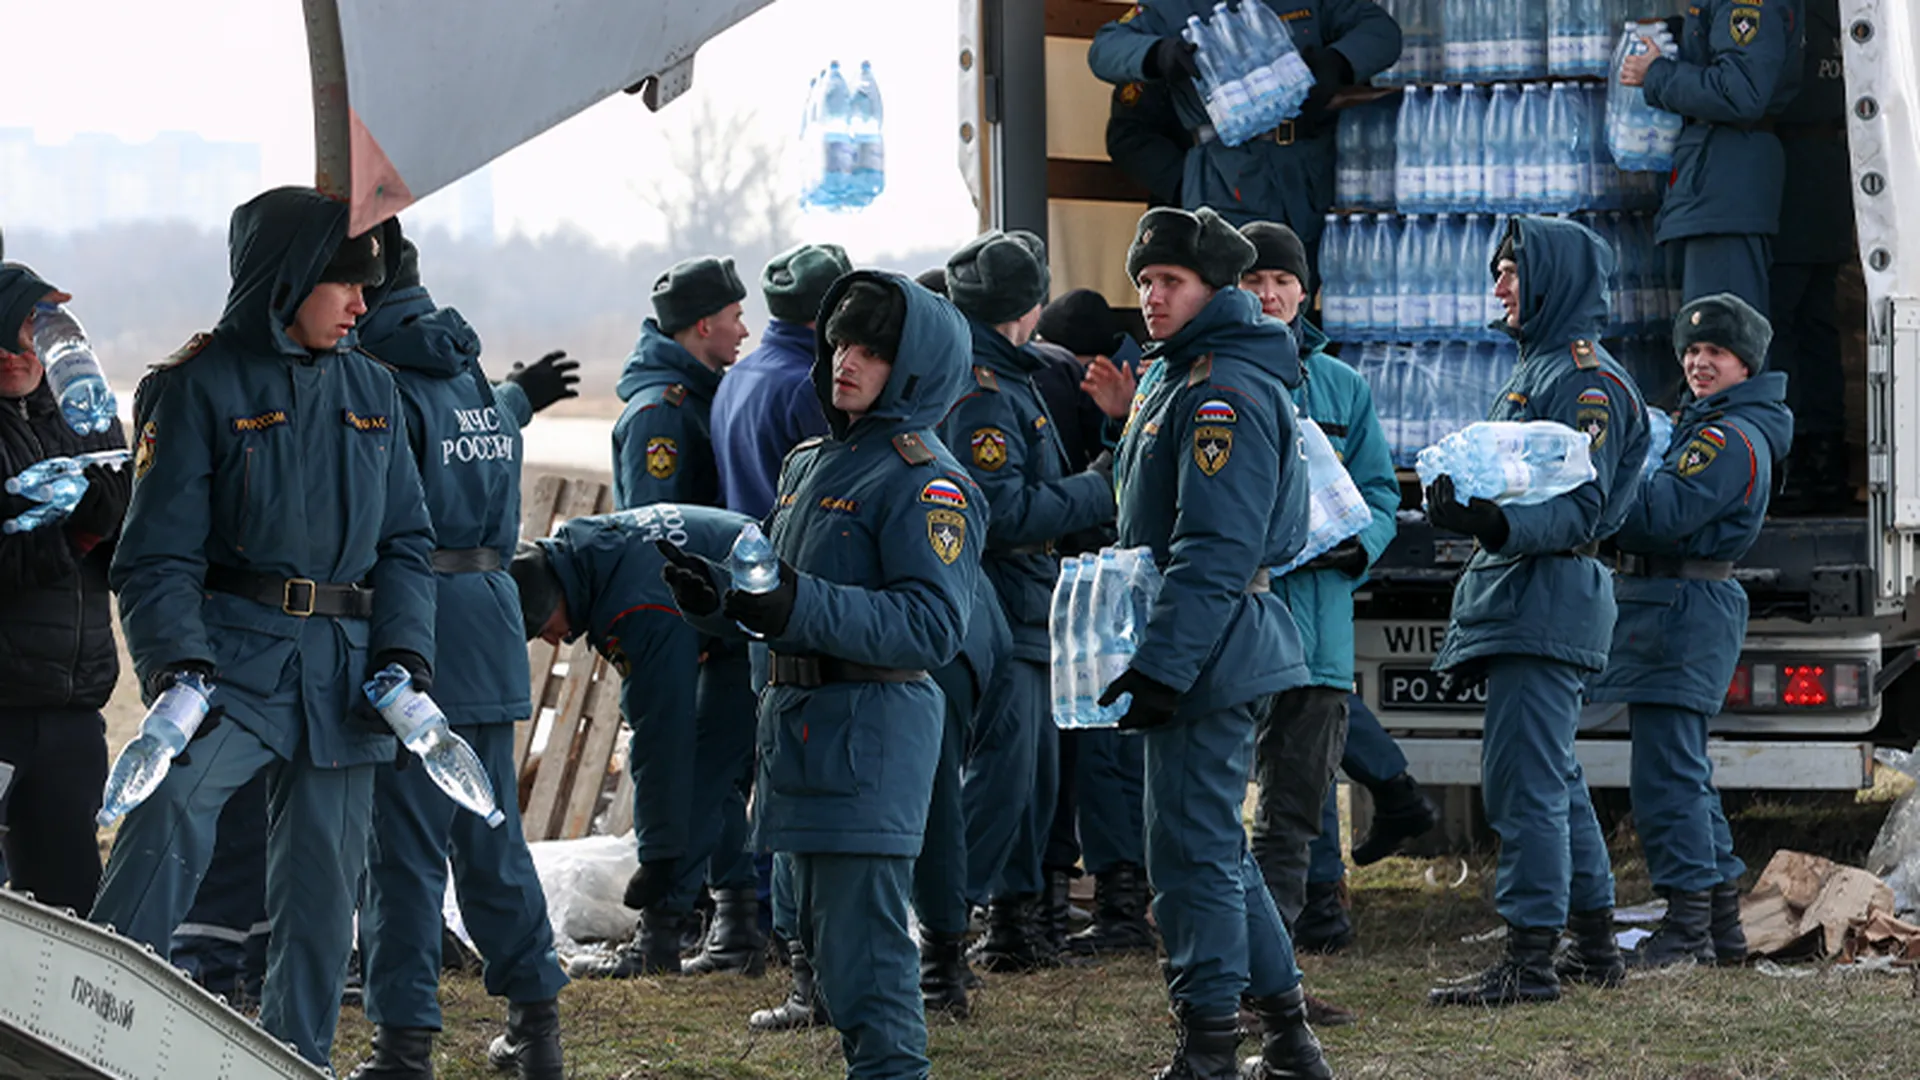 Доставка прямо на фронт: волонтер из Ногинска снова собирается отправить гуманитарную помощь